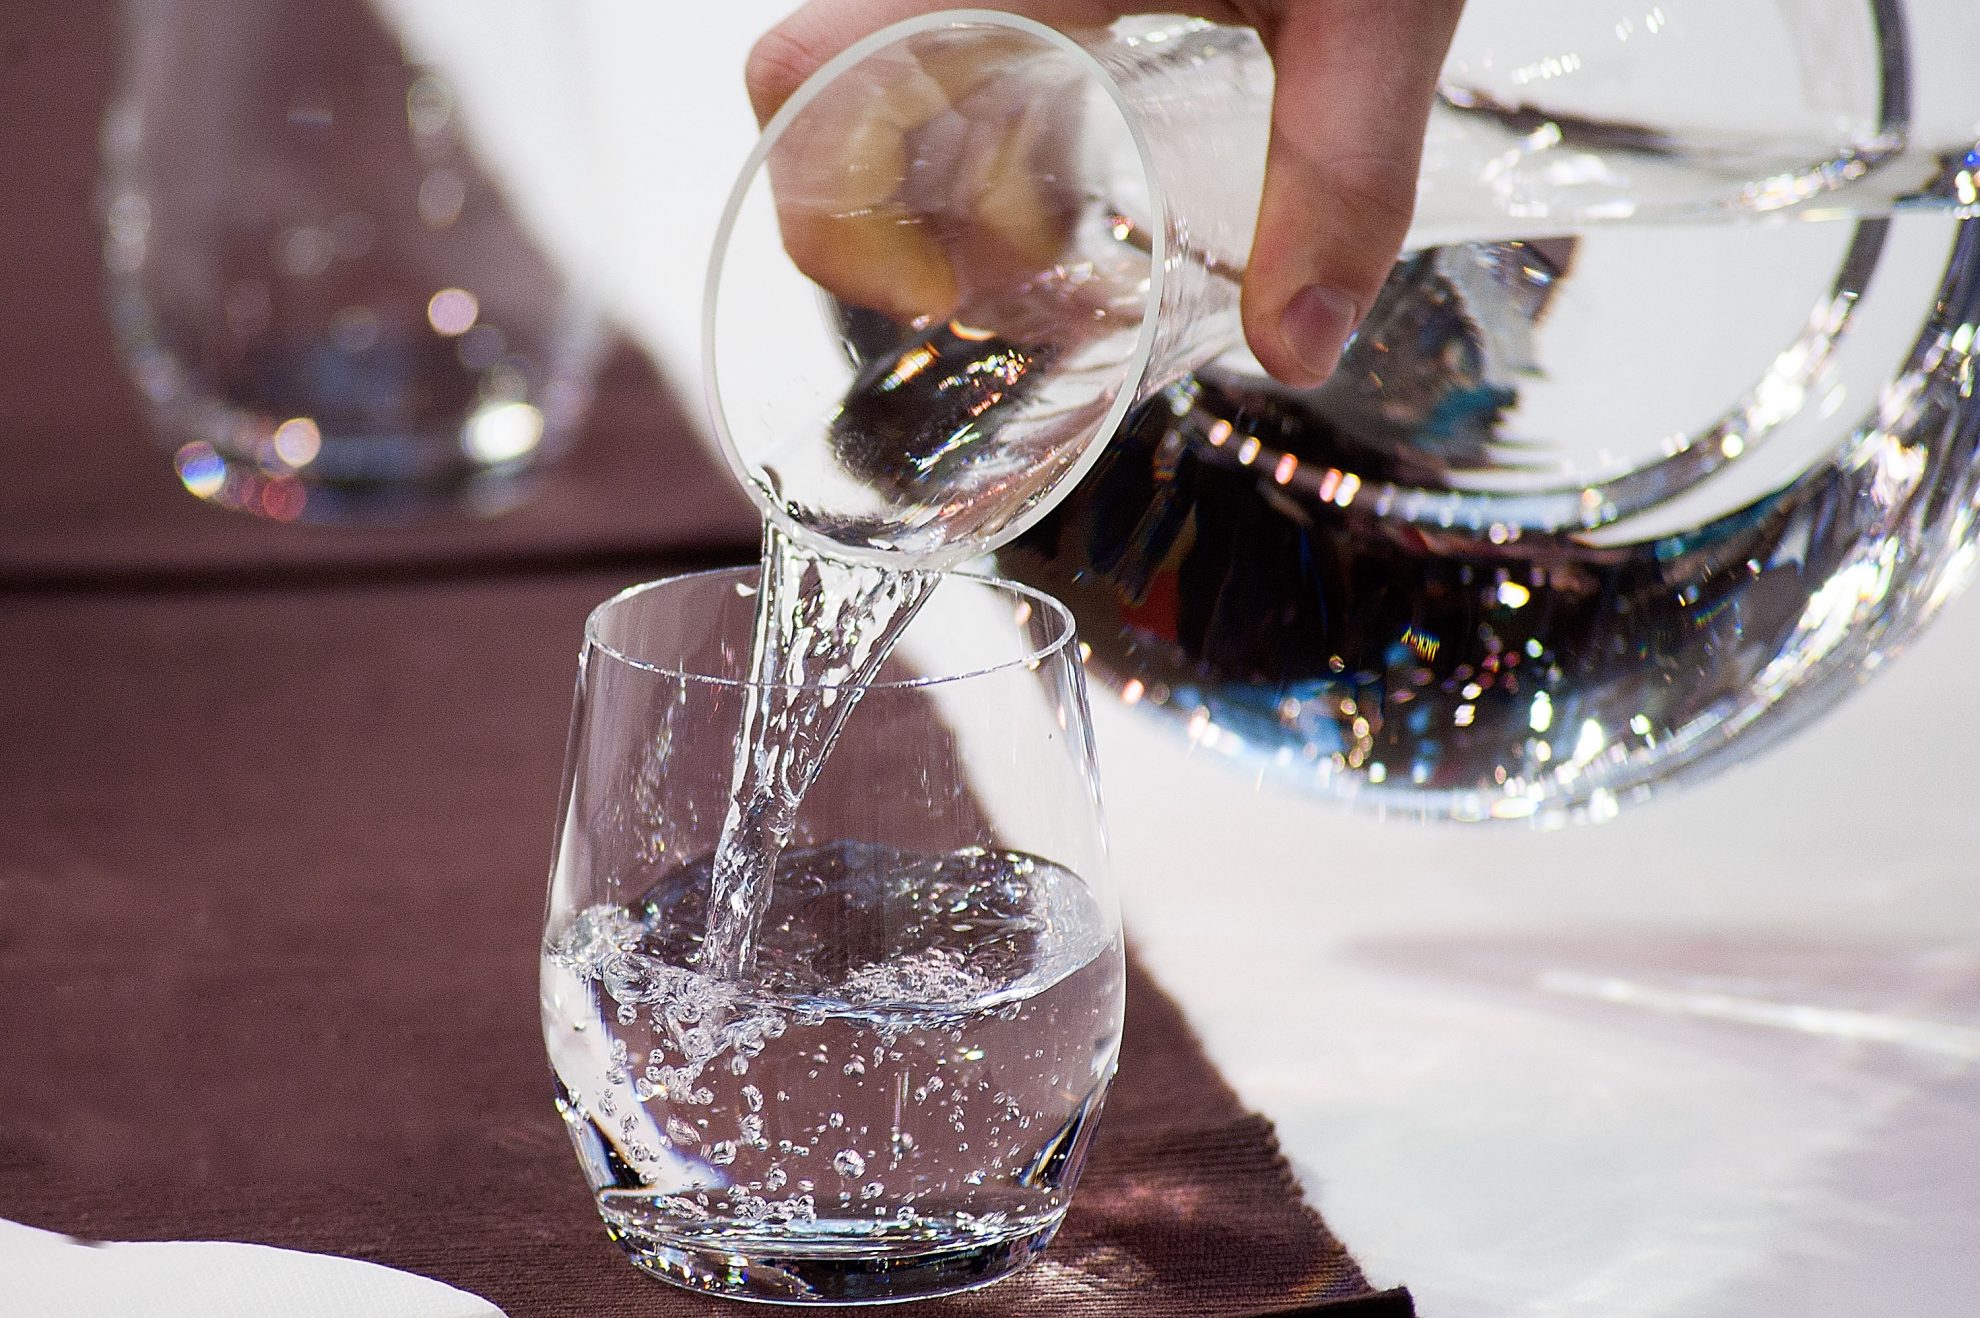 Nuo seno lietuvių mėgstama beržų sula išgyvena tikrą renesansą. Šis gėrimas nesunkiai atranda kelią ant lietuvio stalo.